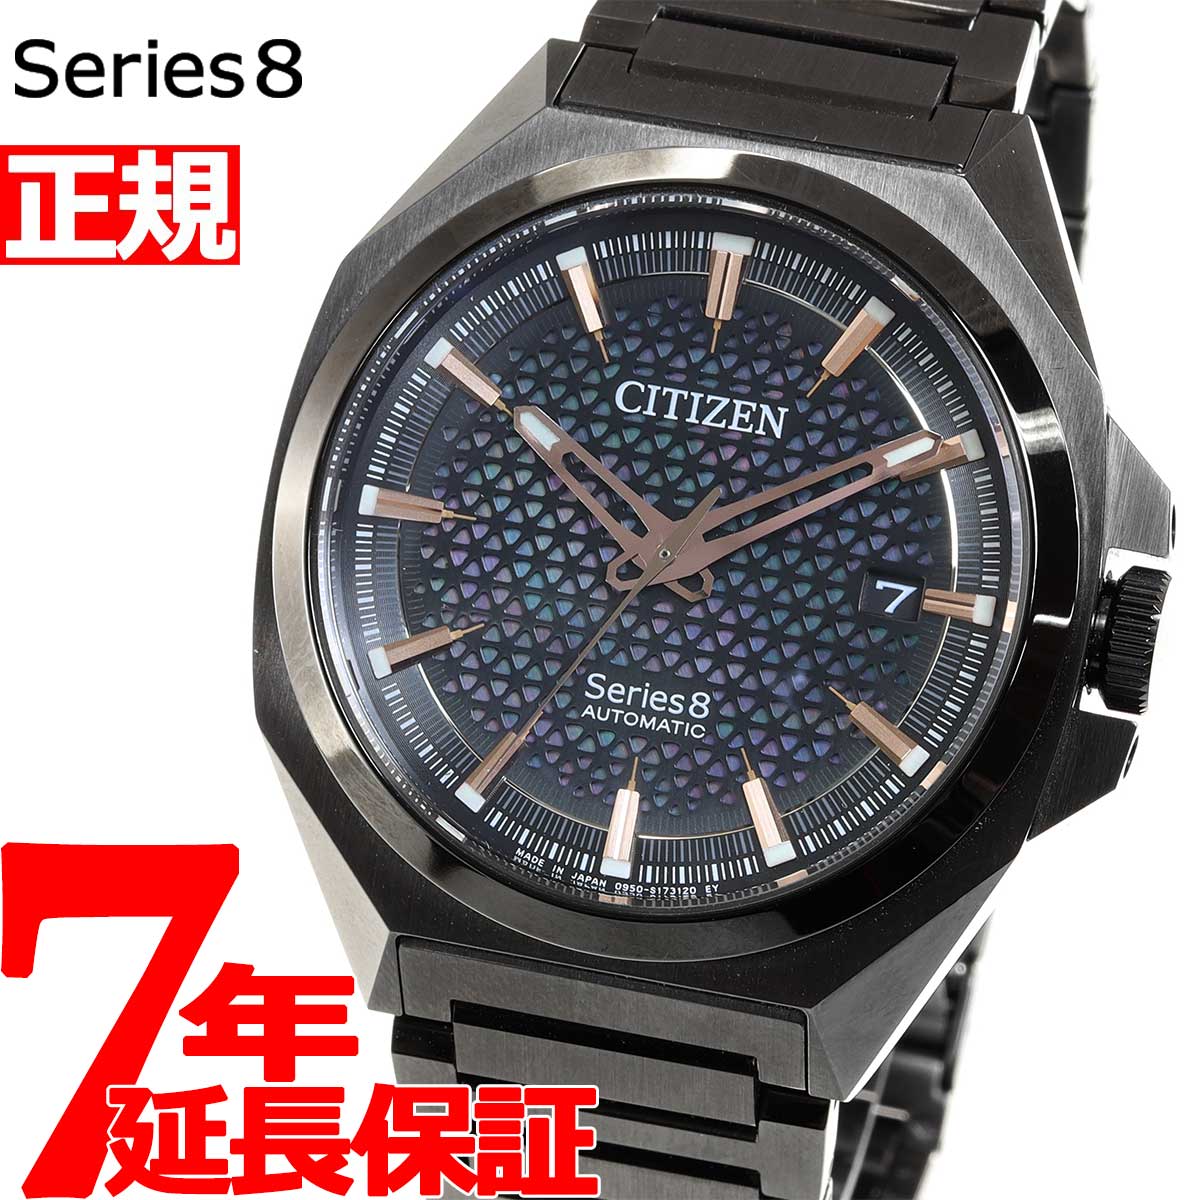 シチズン シリーズエイト CITIZEN Series 8 メカニカル 830 自動巻き 機械式 腕時計 メンズ  NA1015-81Z【36回無金利ローン】